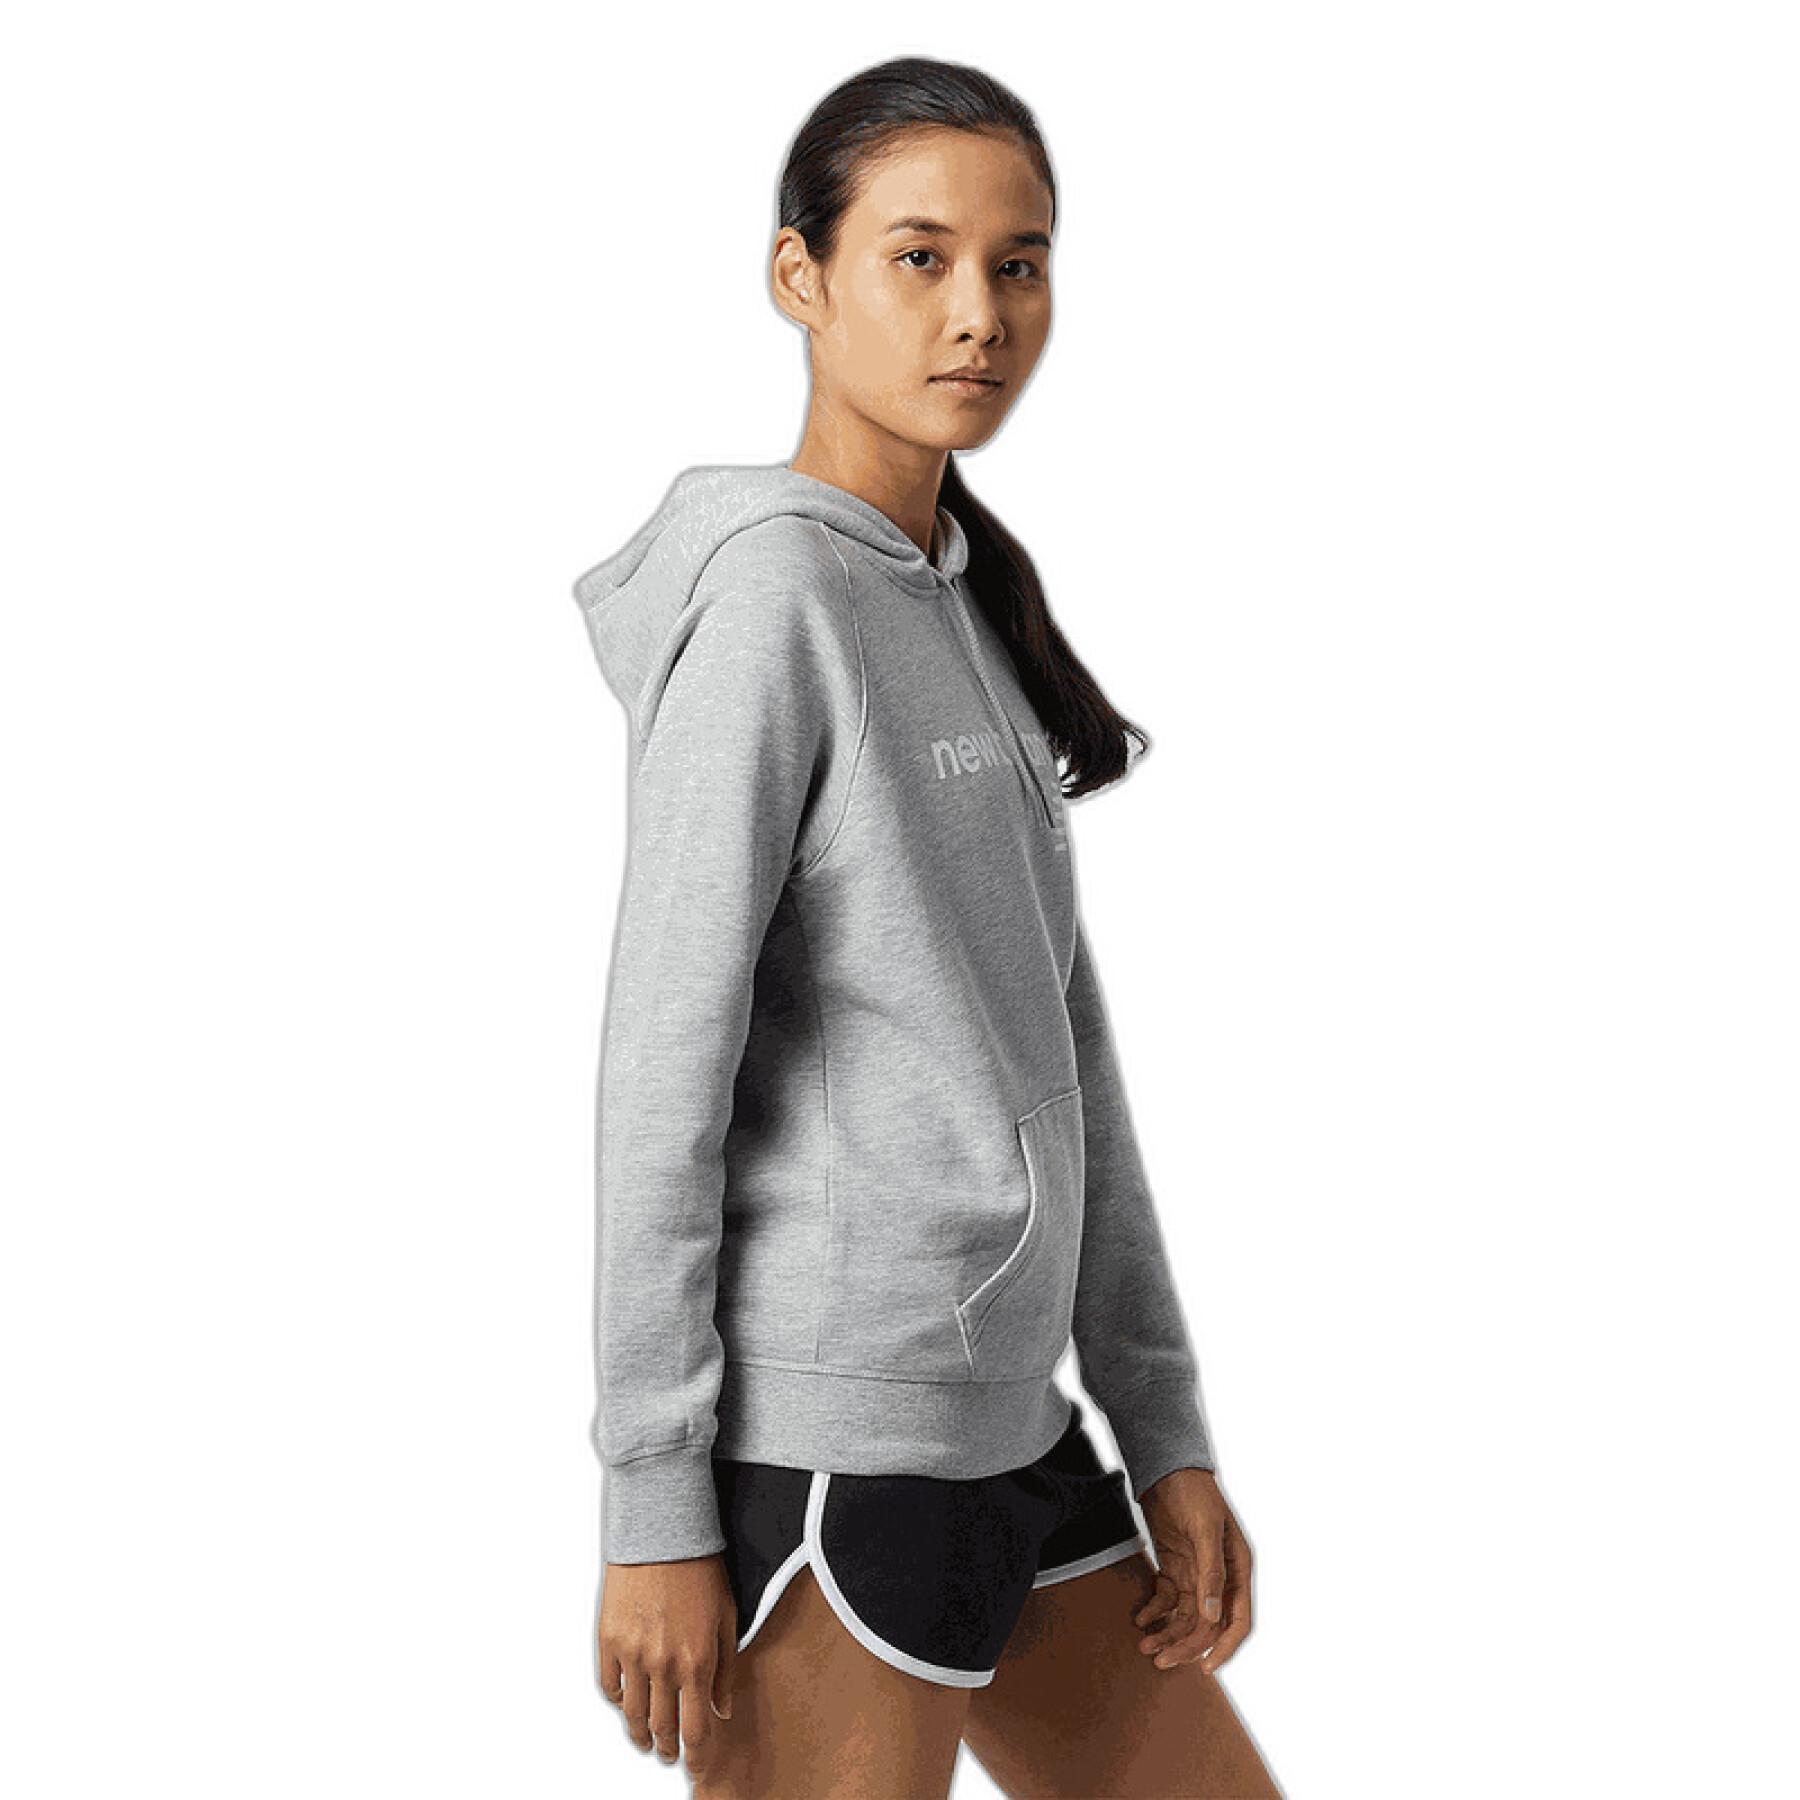 Women's fleece hooded sweatshirt New Balance Classic Core